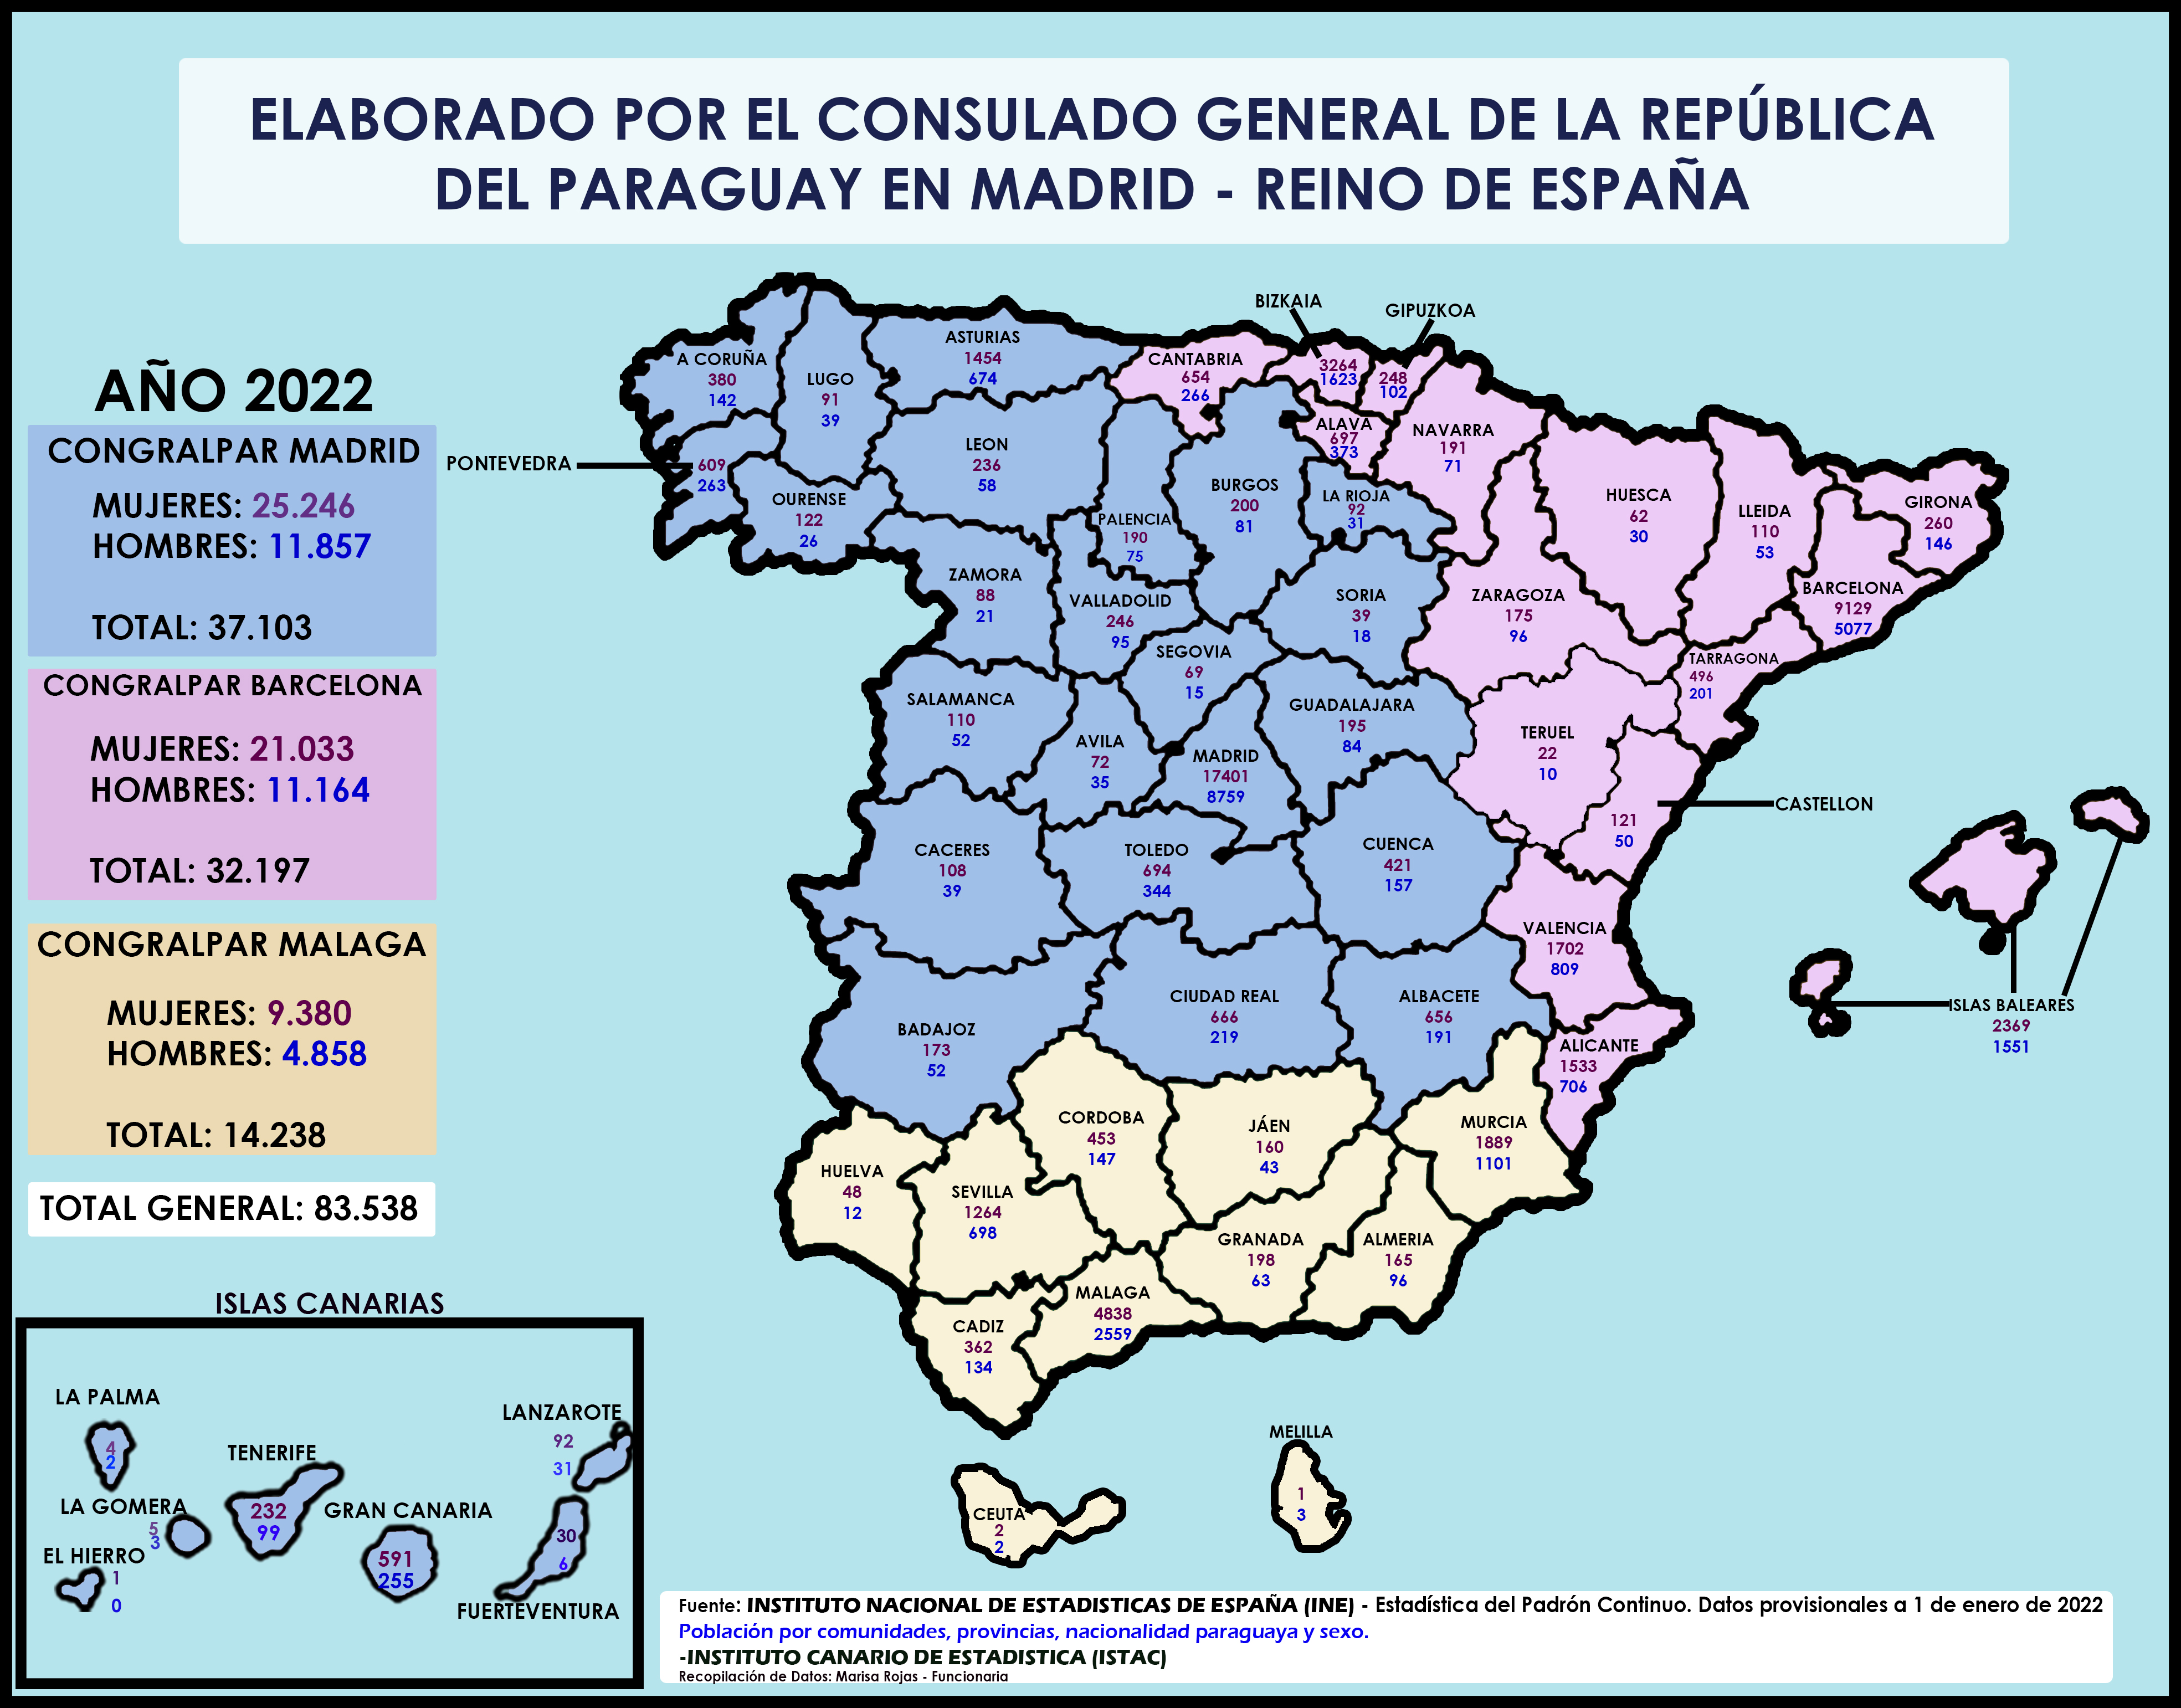 CORREGIDO_DISTRIBUCION_DE_CONNACIONALES_EN_EL_REINO_DE_ESPANA_2022.jpg